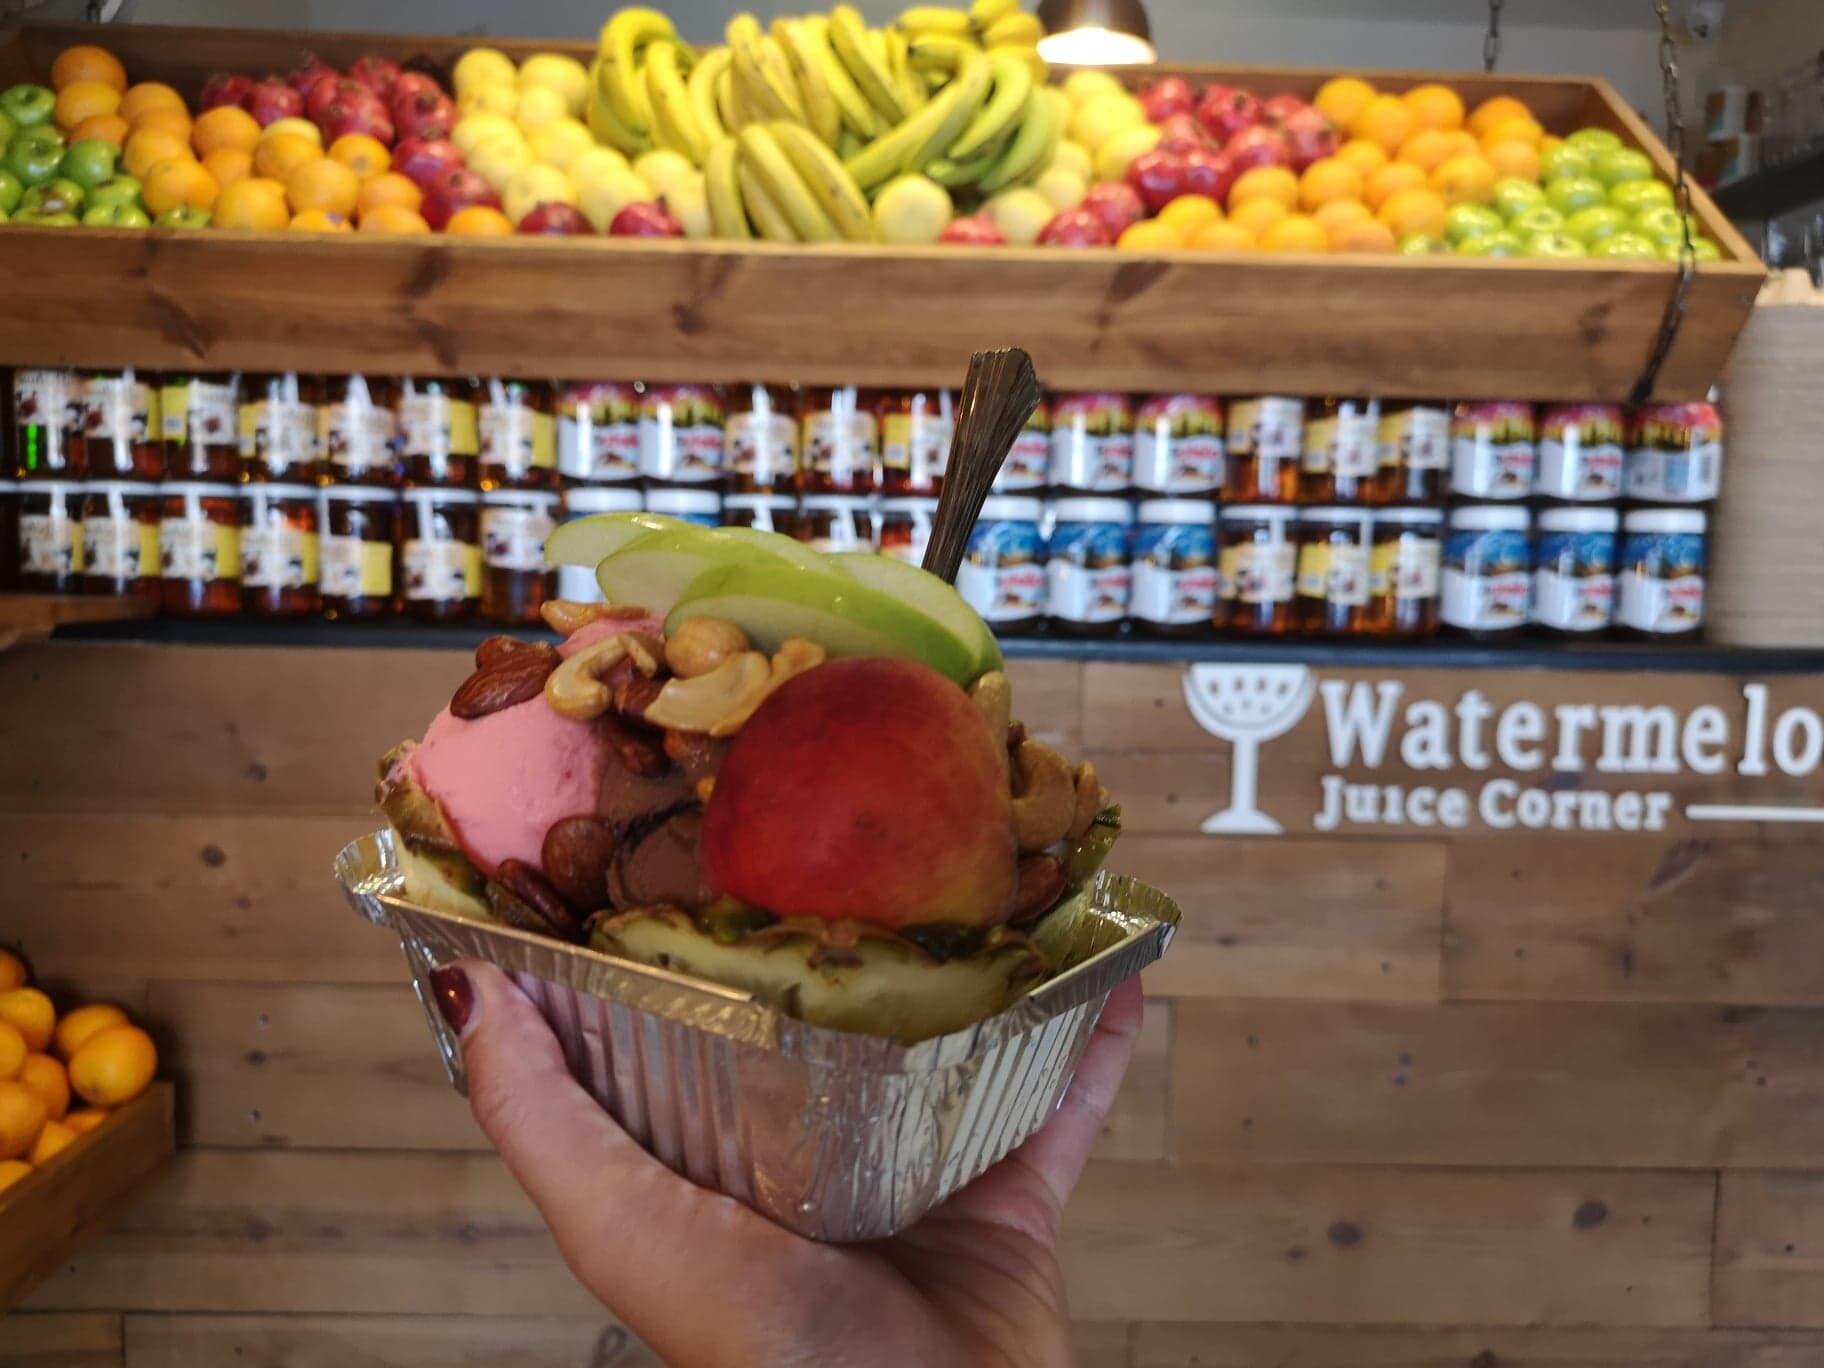 Watermelon Juice Corner vous propose cette "Fruit Salade", pleine de glace, de noix et de fruits...